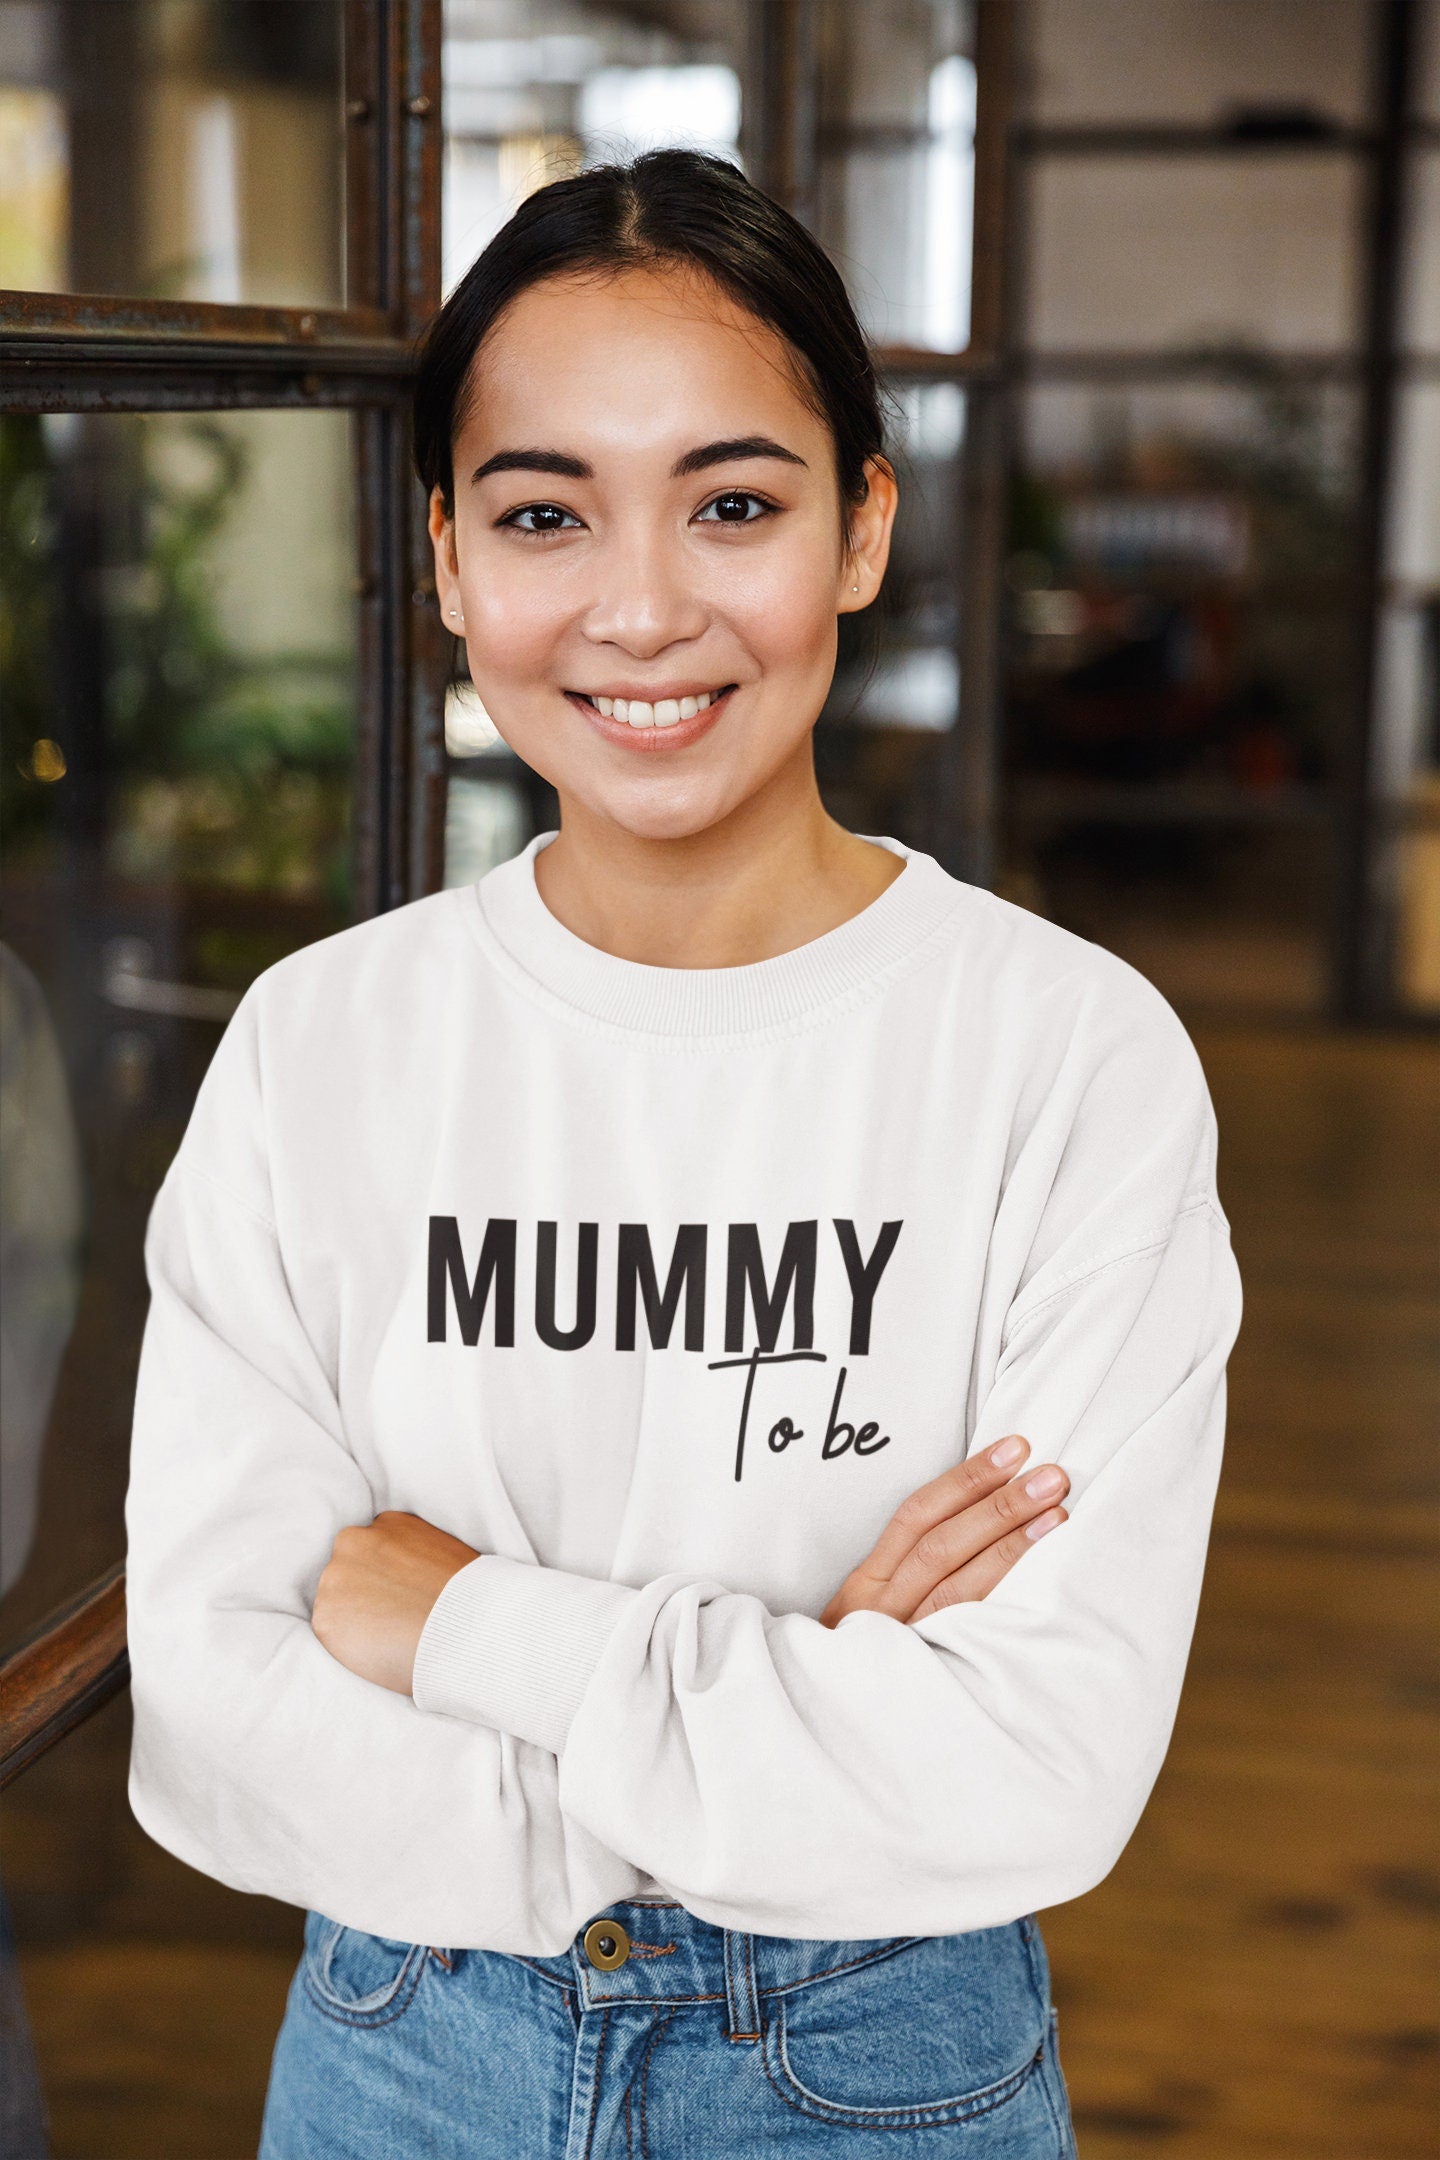 Mummy To Be Sweatshirt